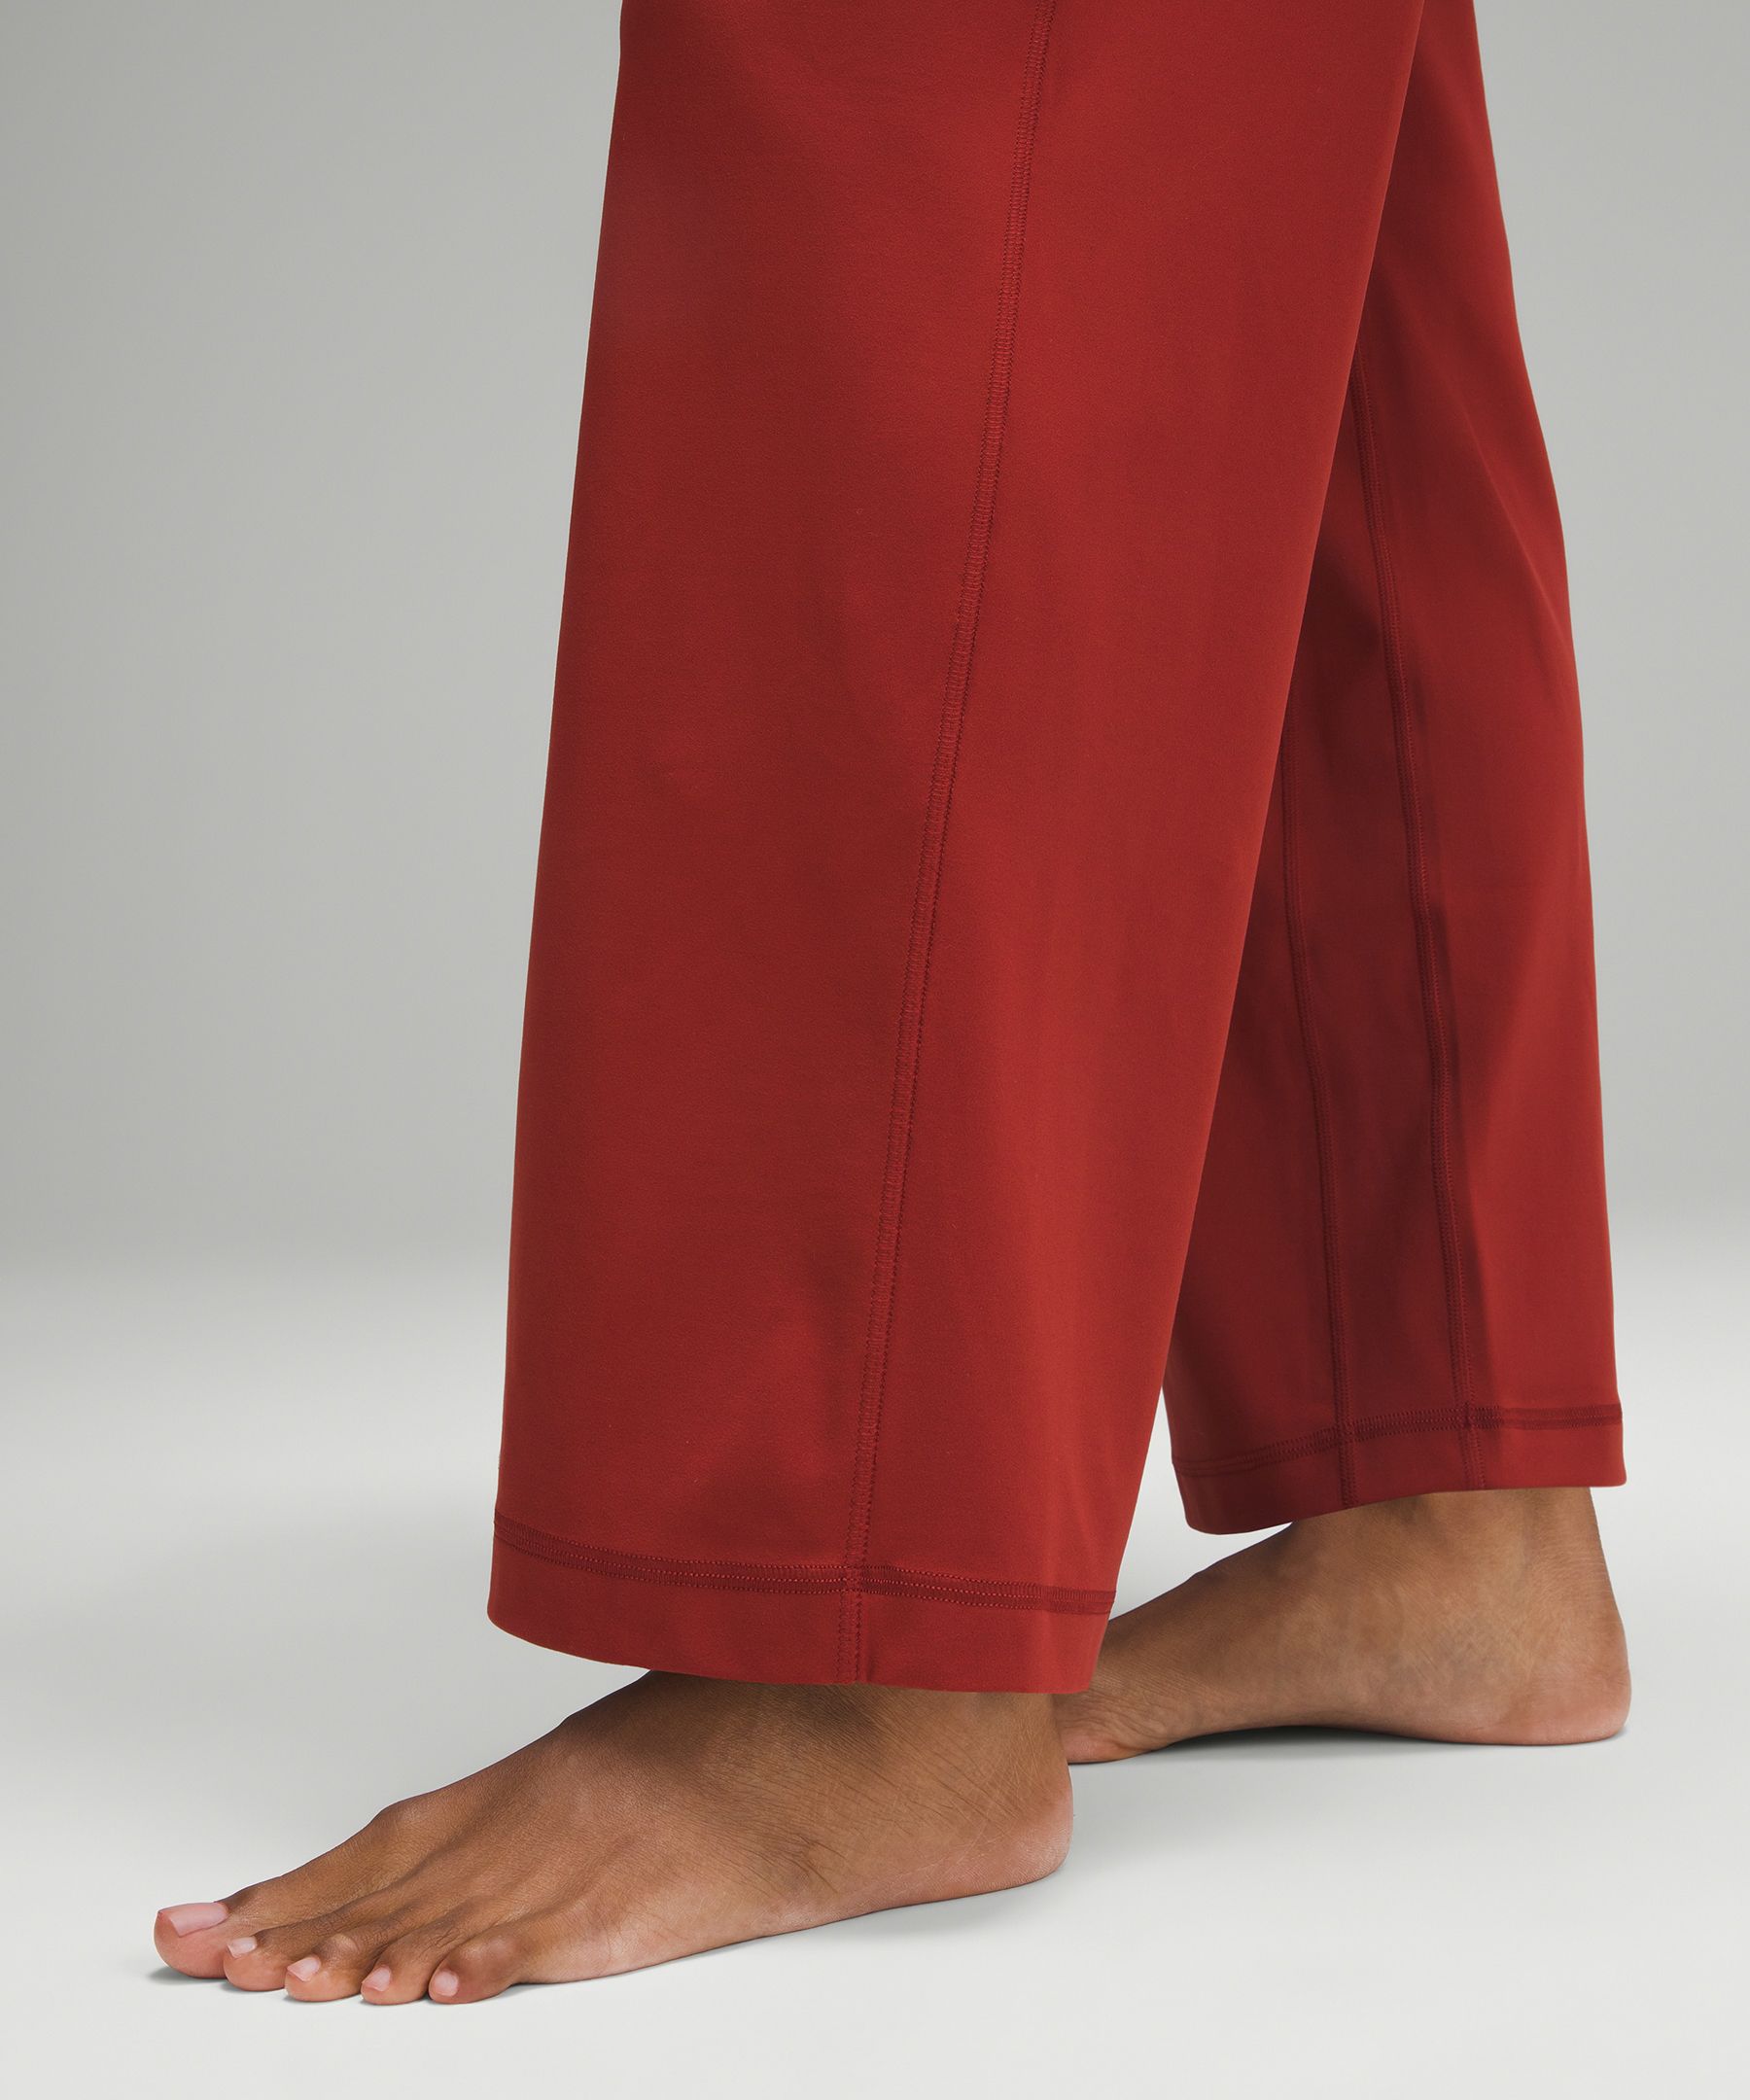 NEW Lululemon Align Wide leg pant 31” (khaki) •size 12 •$$69